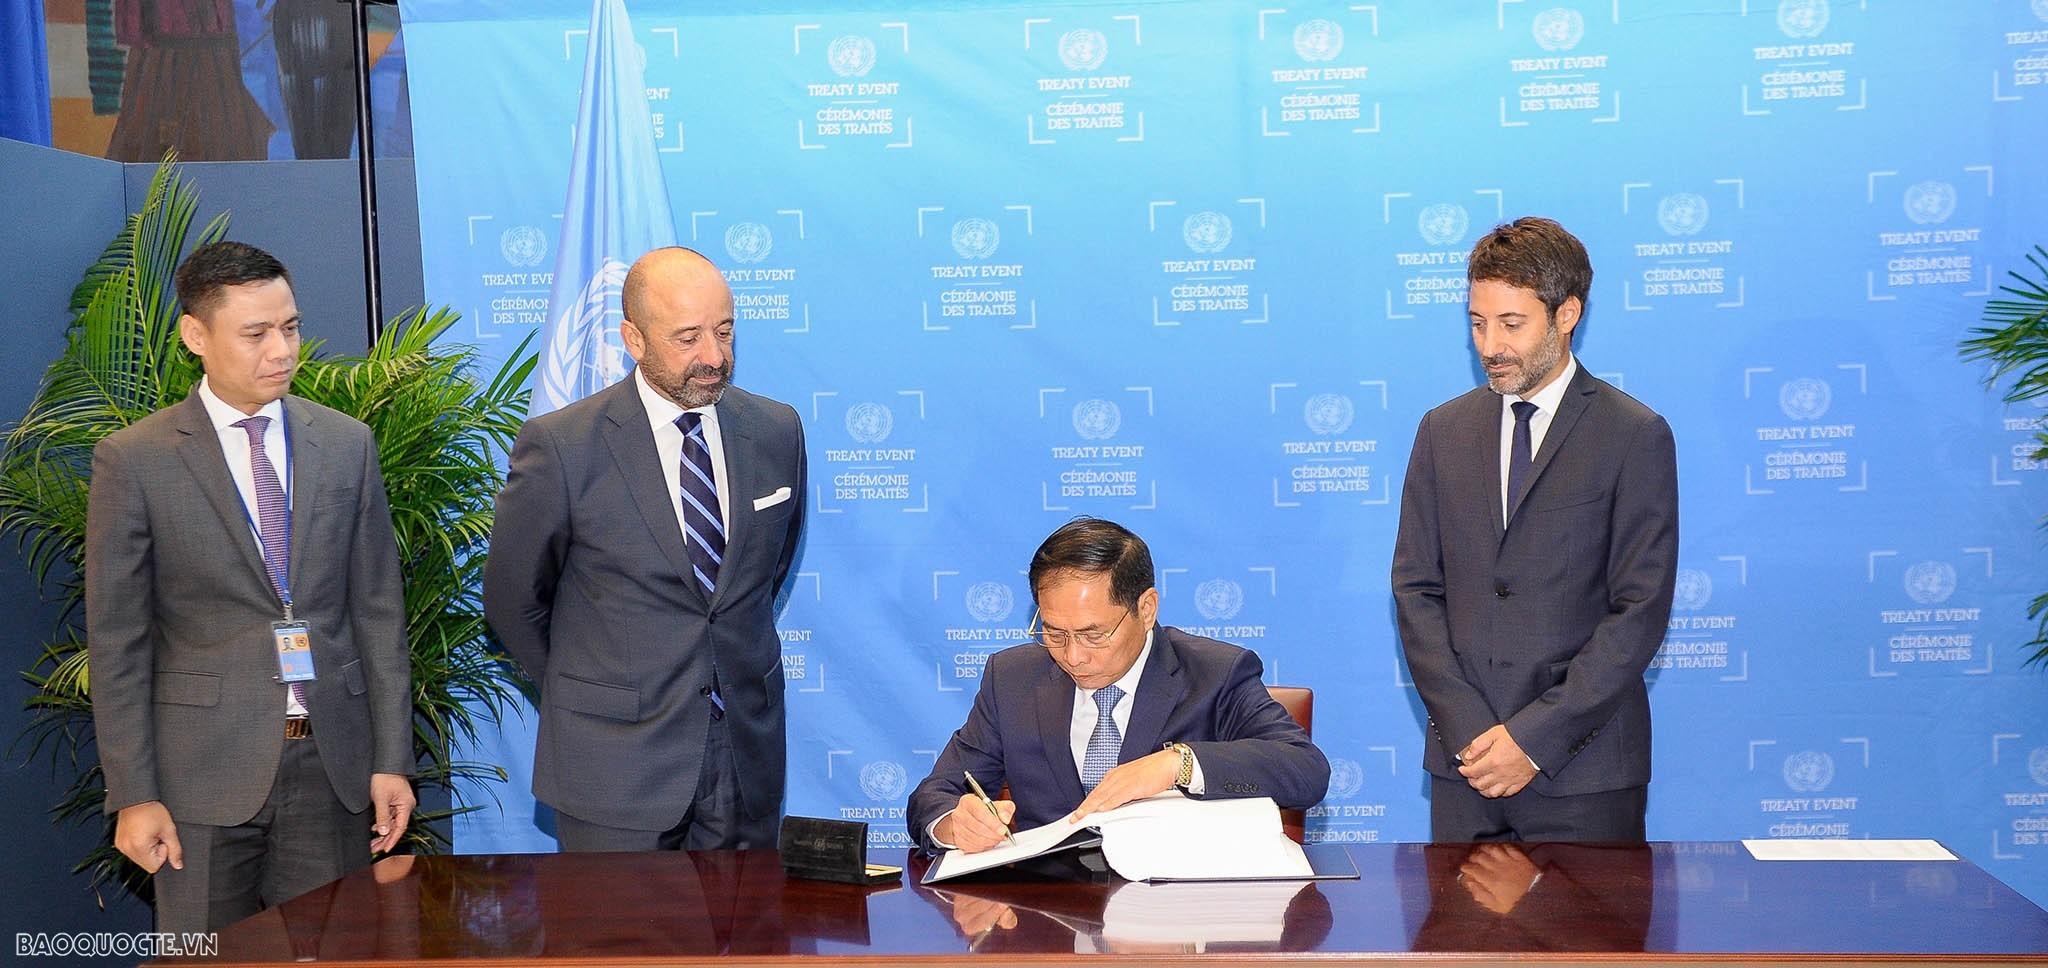 Bộ trưởng Ngoại giao Bùi Thanh Sơn ký Hiệp định về Hiệp định về Bảo tồn và sử dụng bền vững đa dạng sinh học ở vùng biển nằm ngoài quyền tài phán quốc gia.